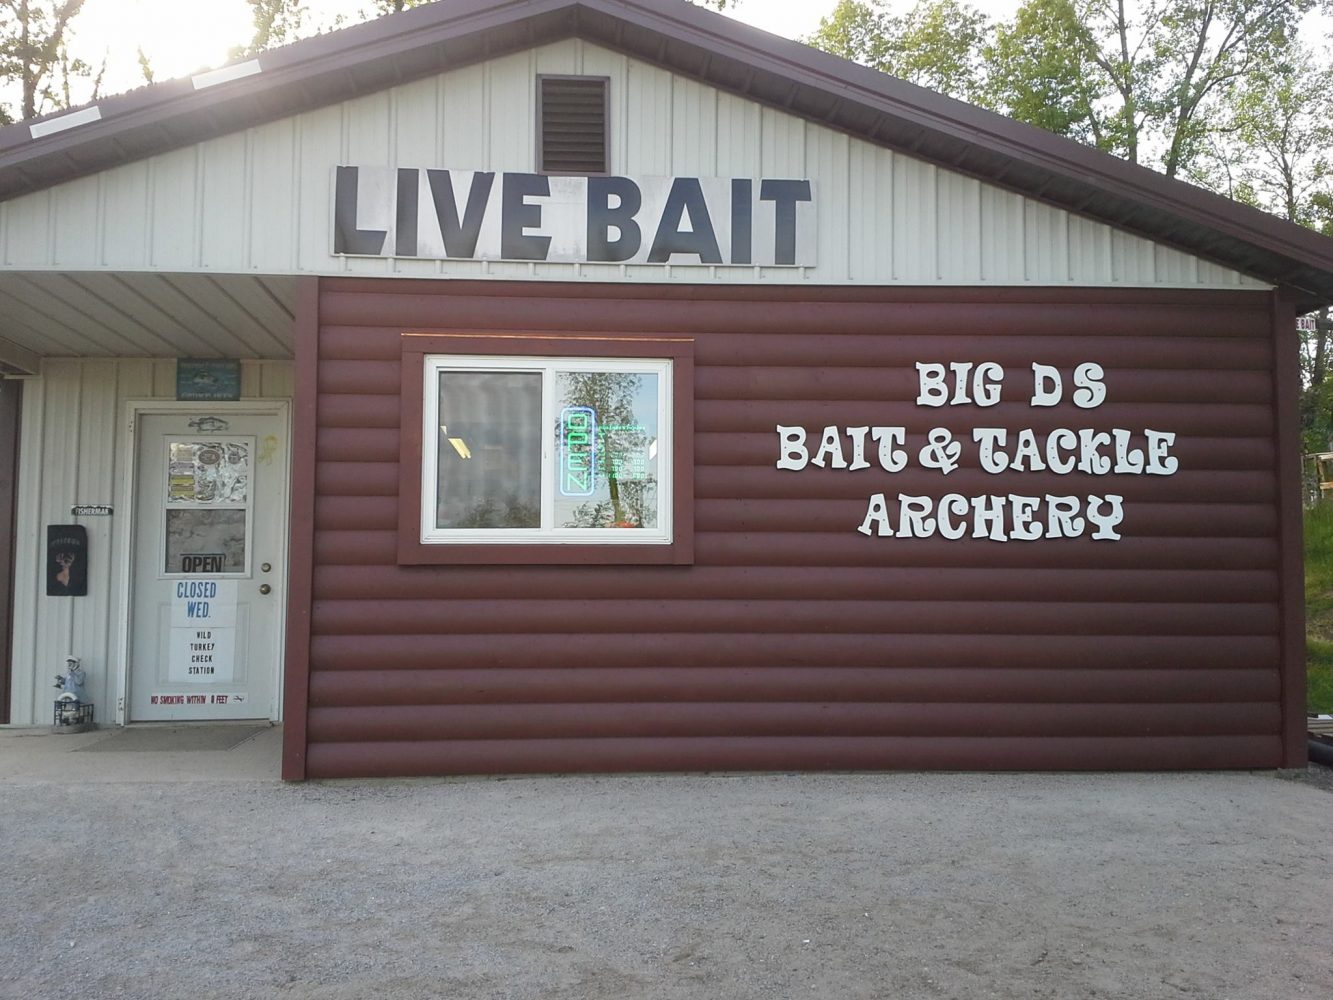 Big D's Bait and Tackle - Steuben County Tourism Bureau